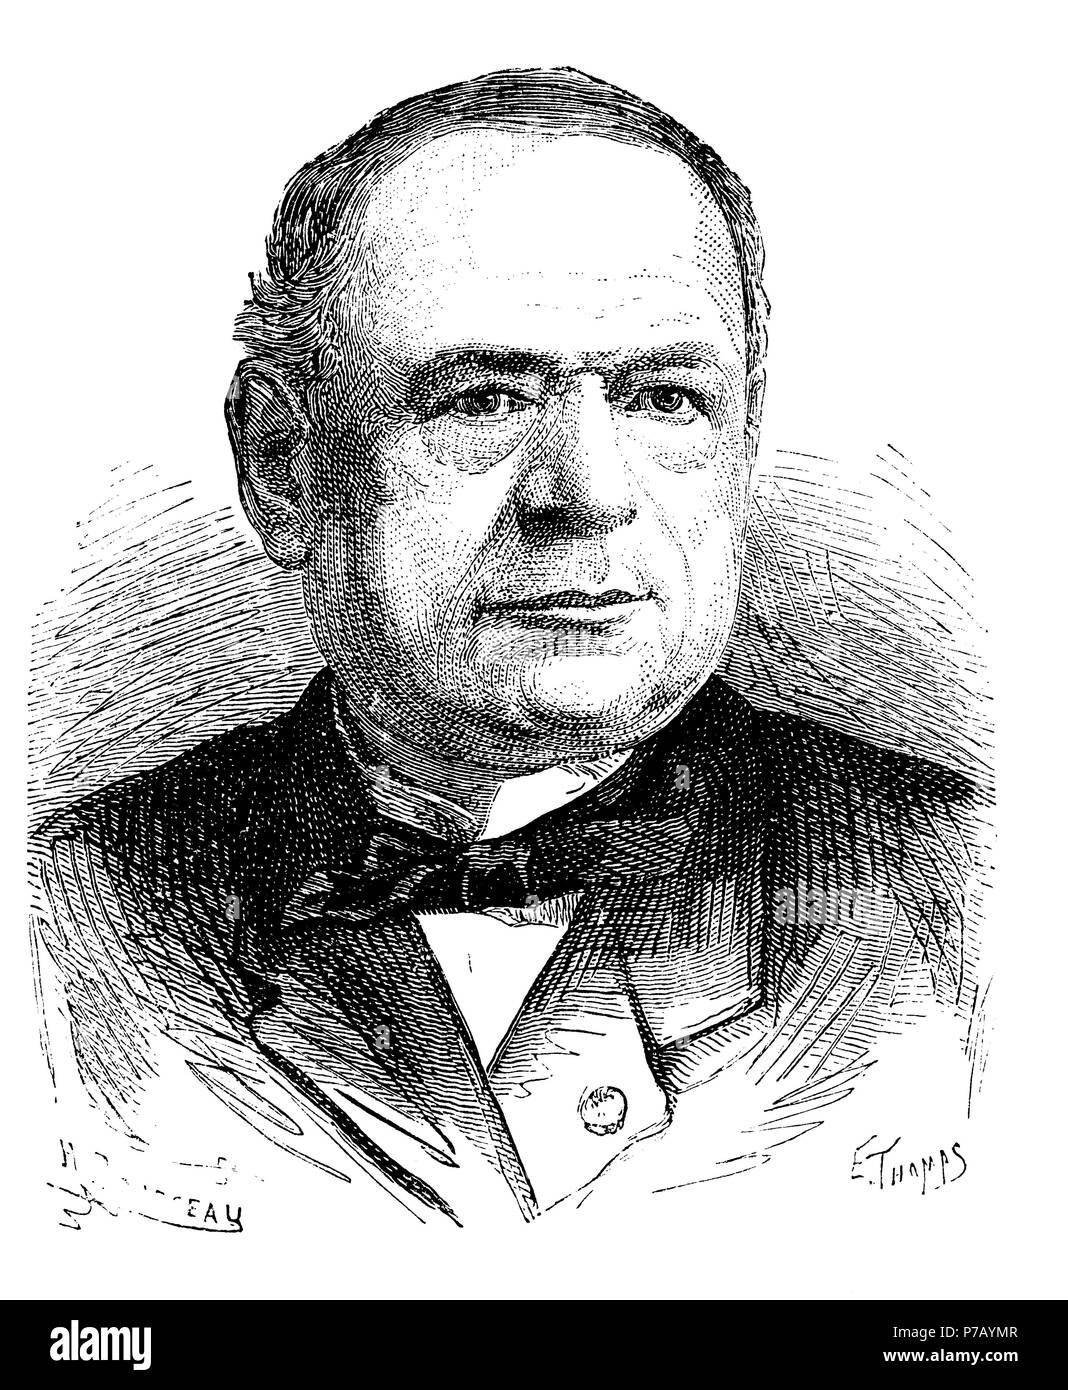 Moritz Hermann von Jacobi (1801-1874), ingeniero y físico alemán, descubridor de la galvanoplastia. Grabado de 1873. Stock Photo